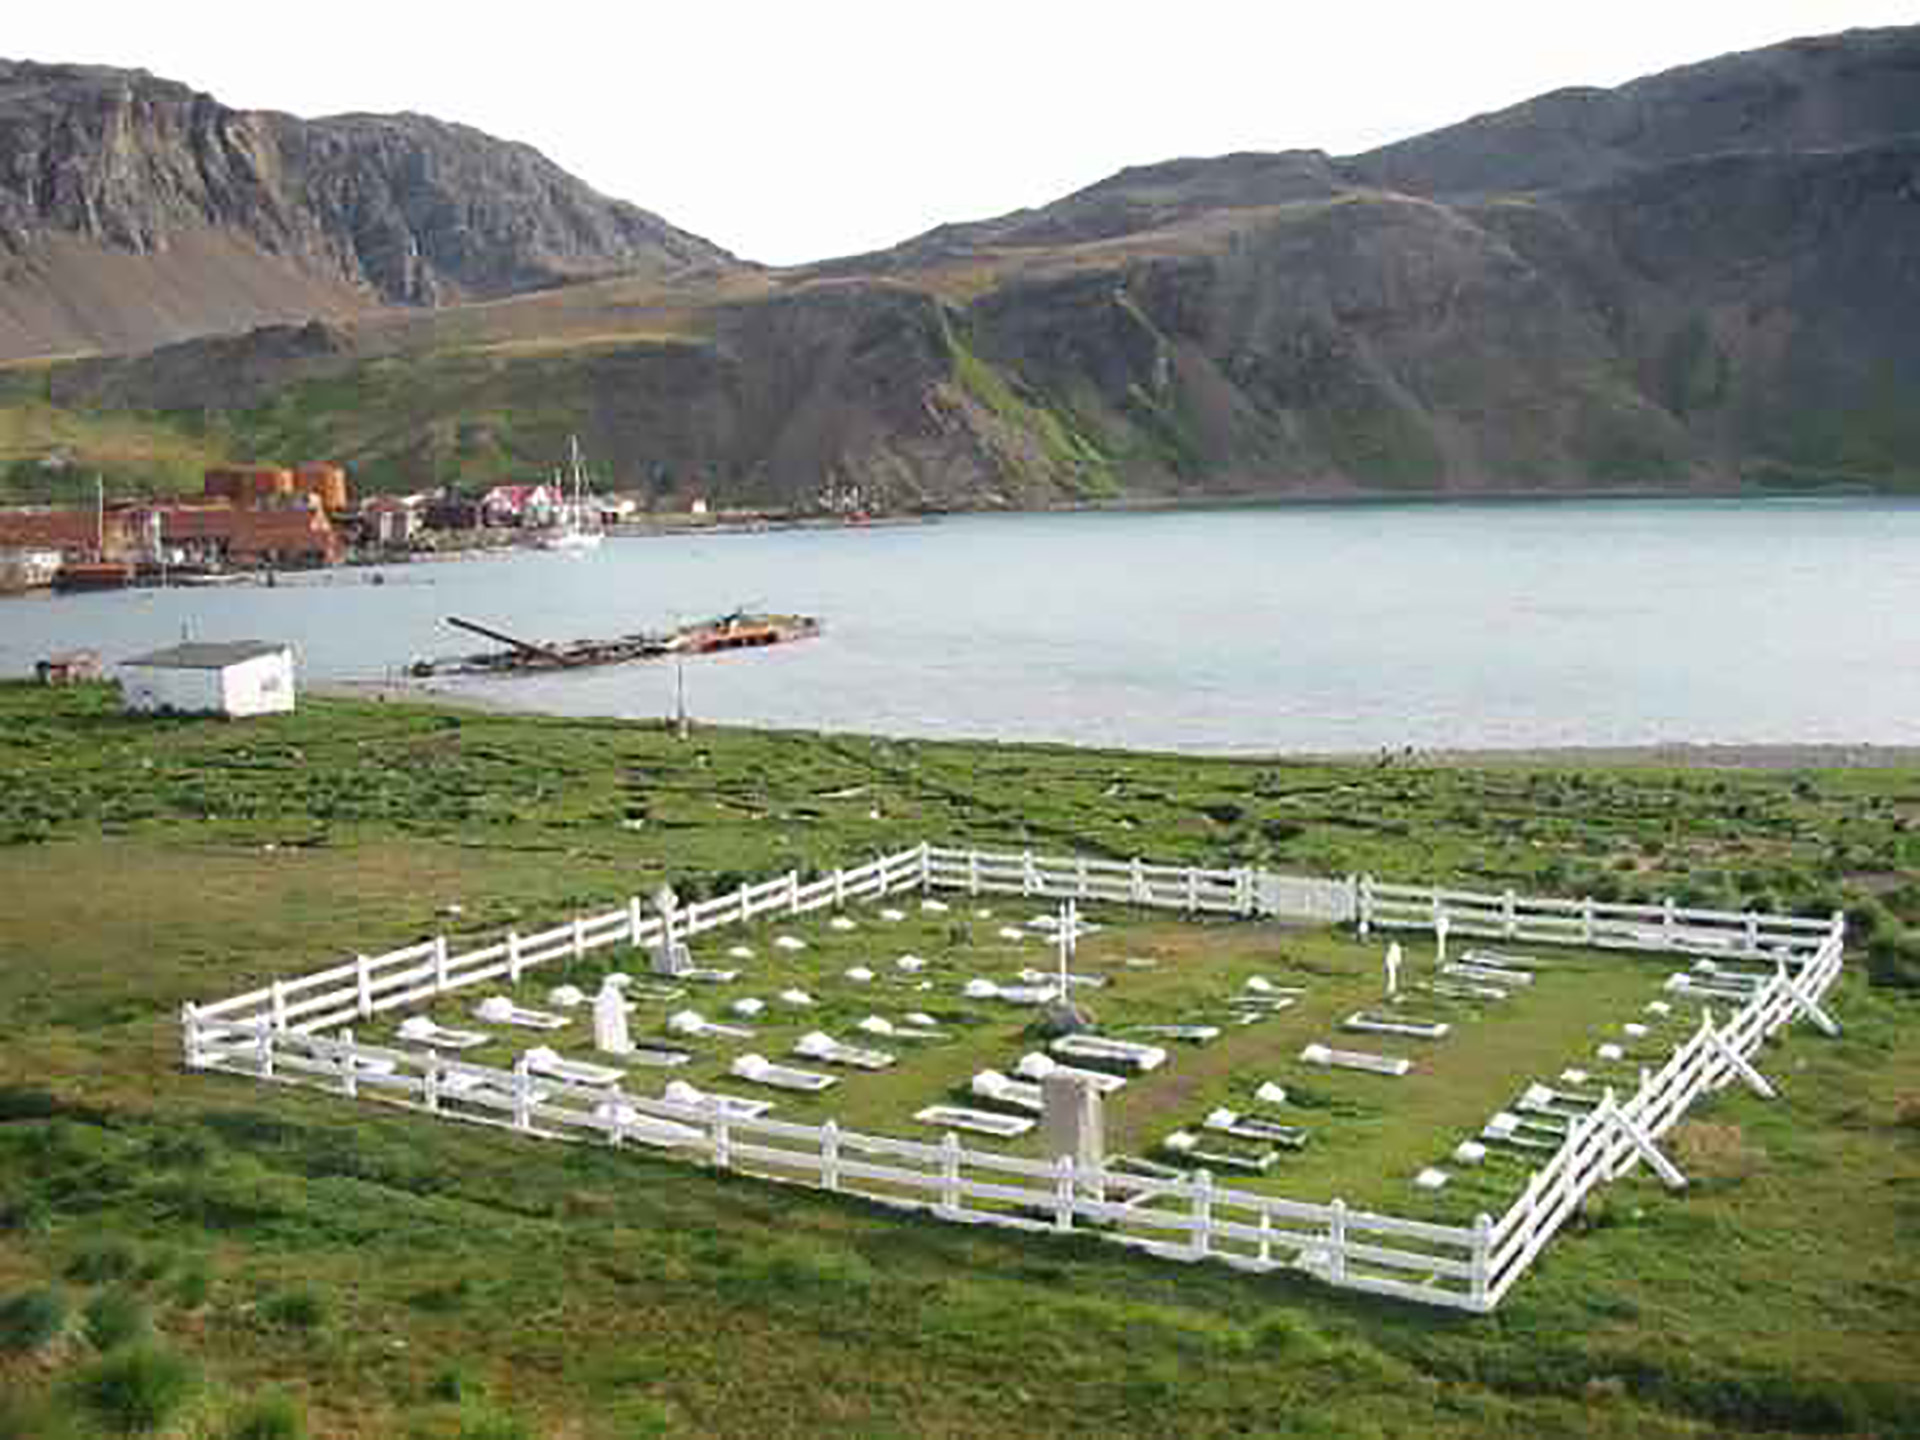 Cementerio de Grytviken, donde descansan los restos del único héroe argentino enterrado en las Georgias. Hace años un profesor canadiense que corría la Regata Shackleton se ofreció a llevar un arreglo floral imperecedero confeccionado por la familia y lo colocaron en la lápida
